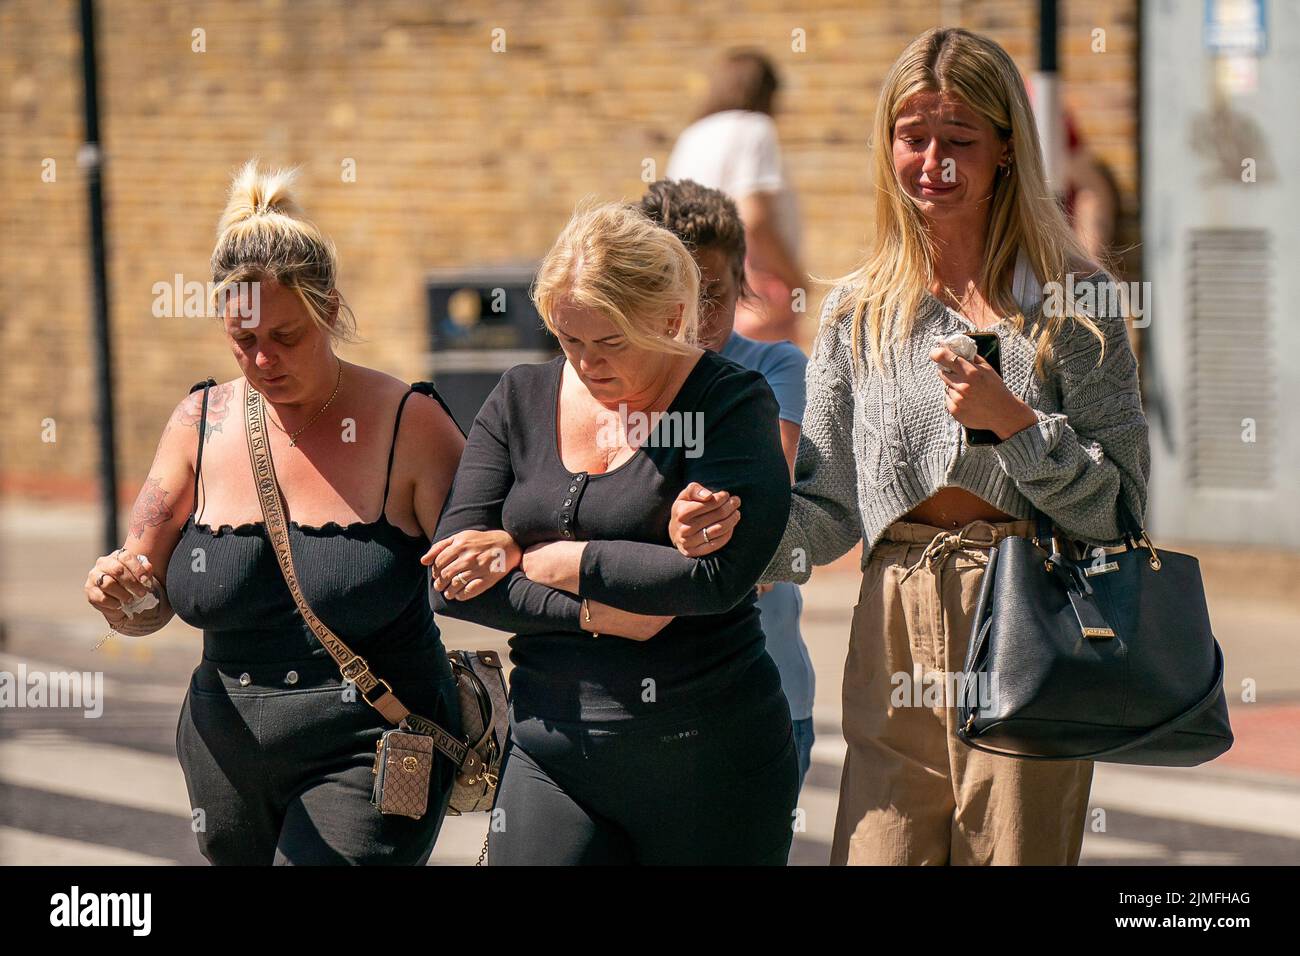 Hollie Dance (centro) Rodeada de familiares y amigos, fuera del hospital Royal London en Whitechapel, al este de Londres, llegan para hablar con los medios de comunicación tras la muerte de su hijo de 12 años Archie Battersbee. Fecha de la foto: Sábado 6 de agosto de 2022. Foto de stock